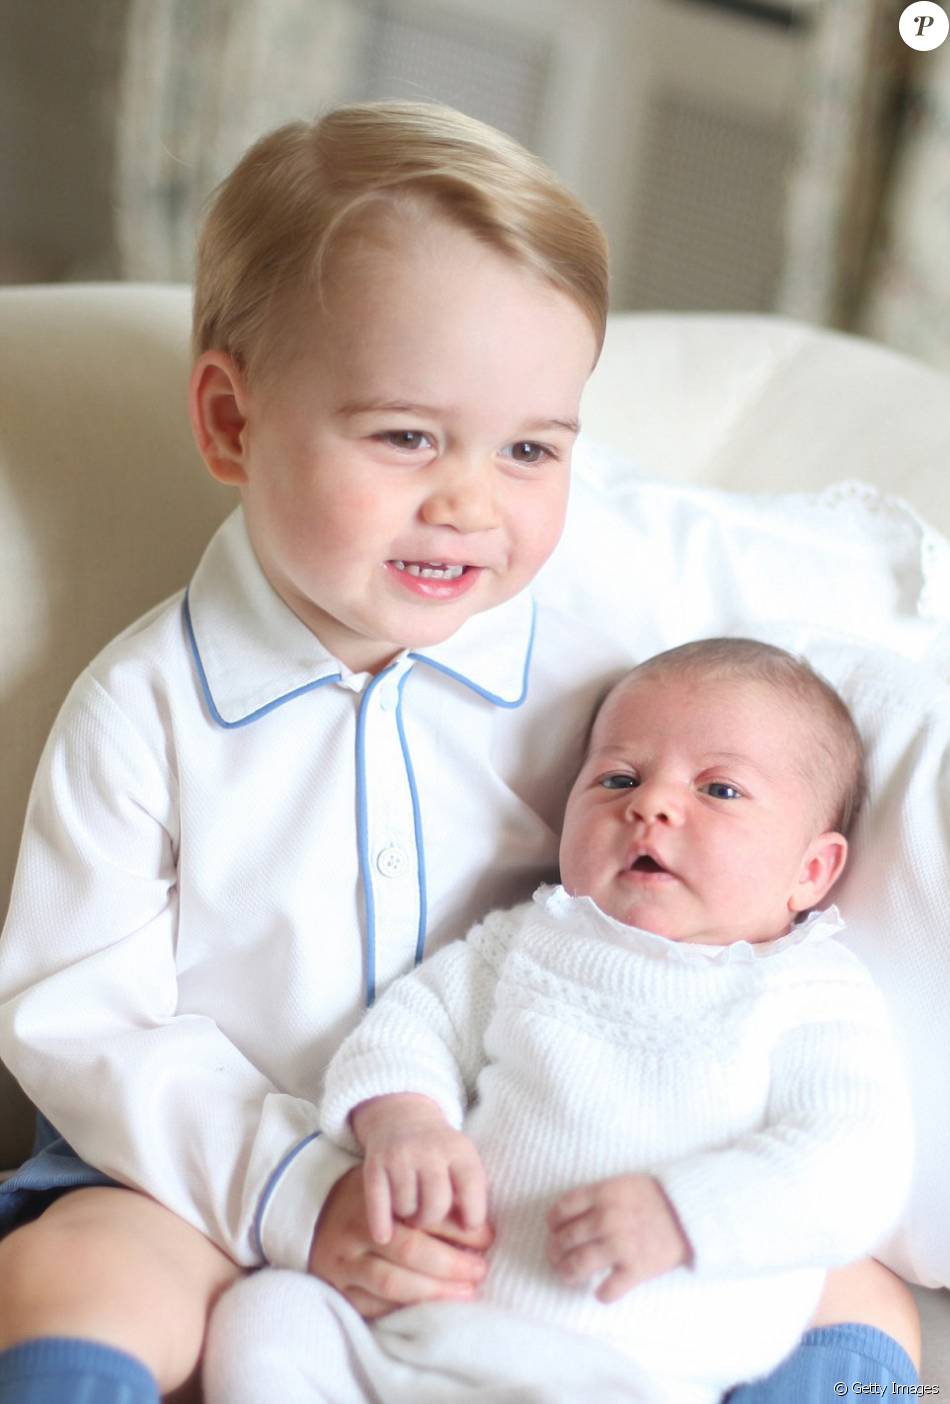 Príncipe George sempre rouba a cena em fotos oficiais da família Real. Em junho de 2015, ele posou com a irmã caçula, Charlotte Elizabeth Diana, no colo